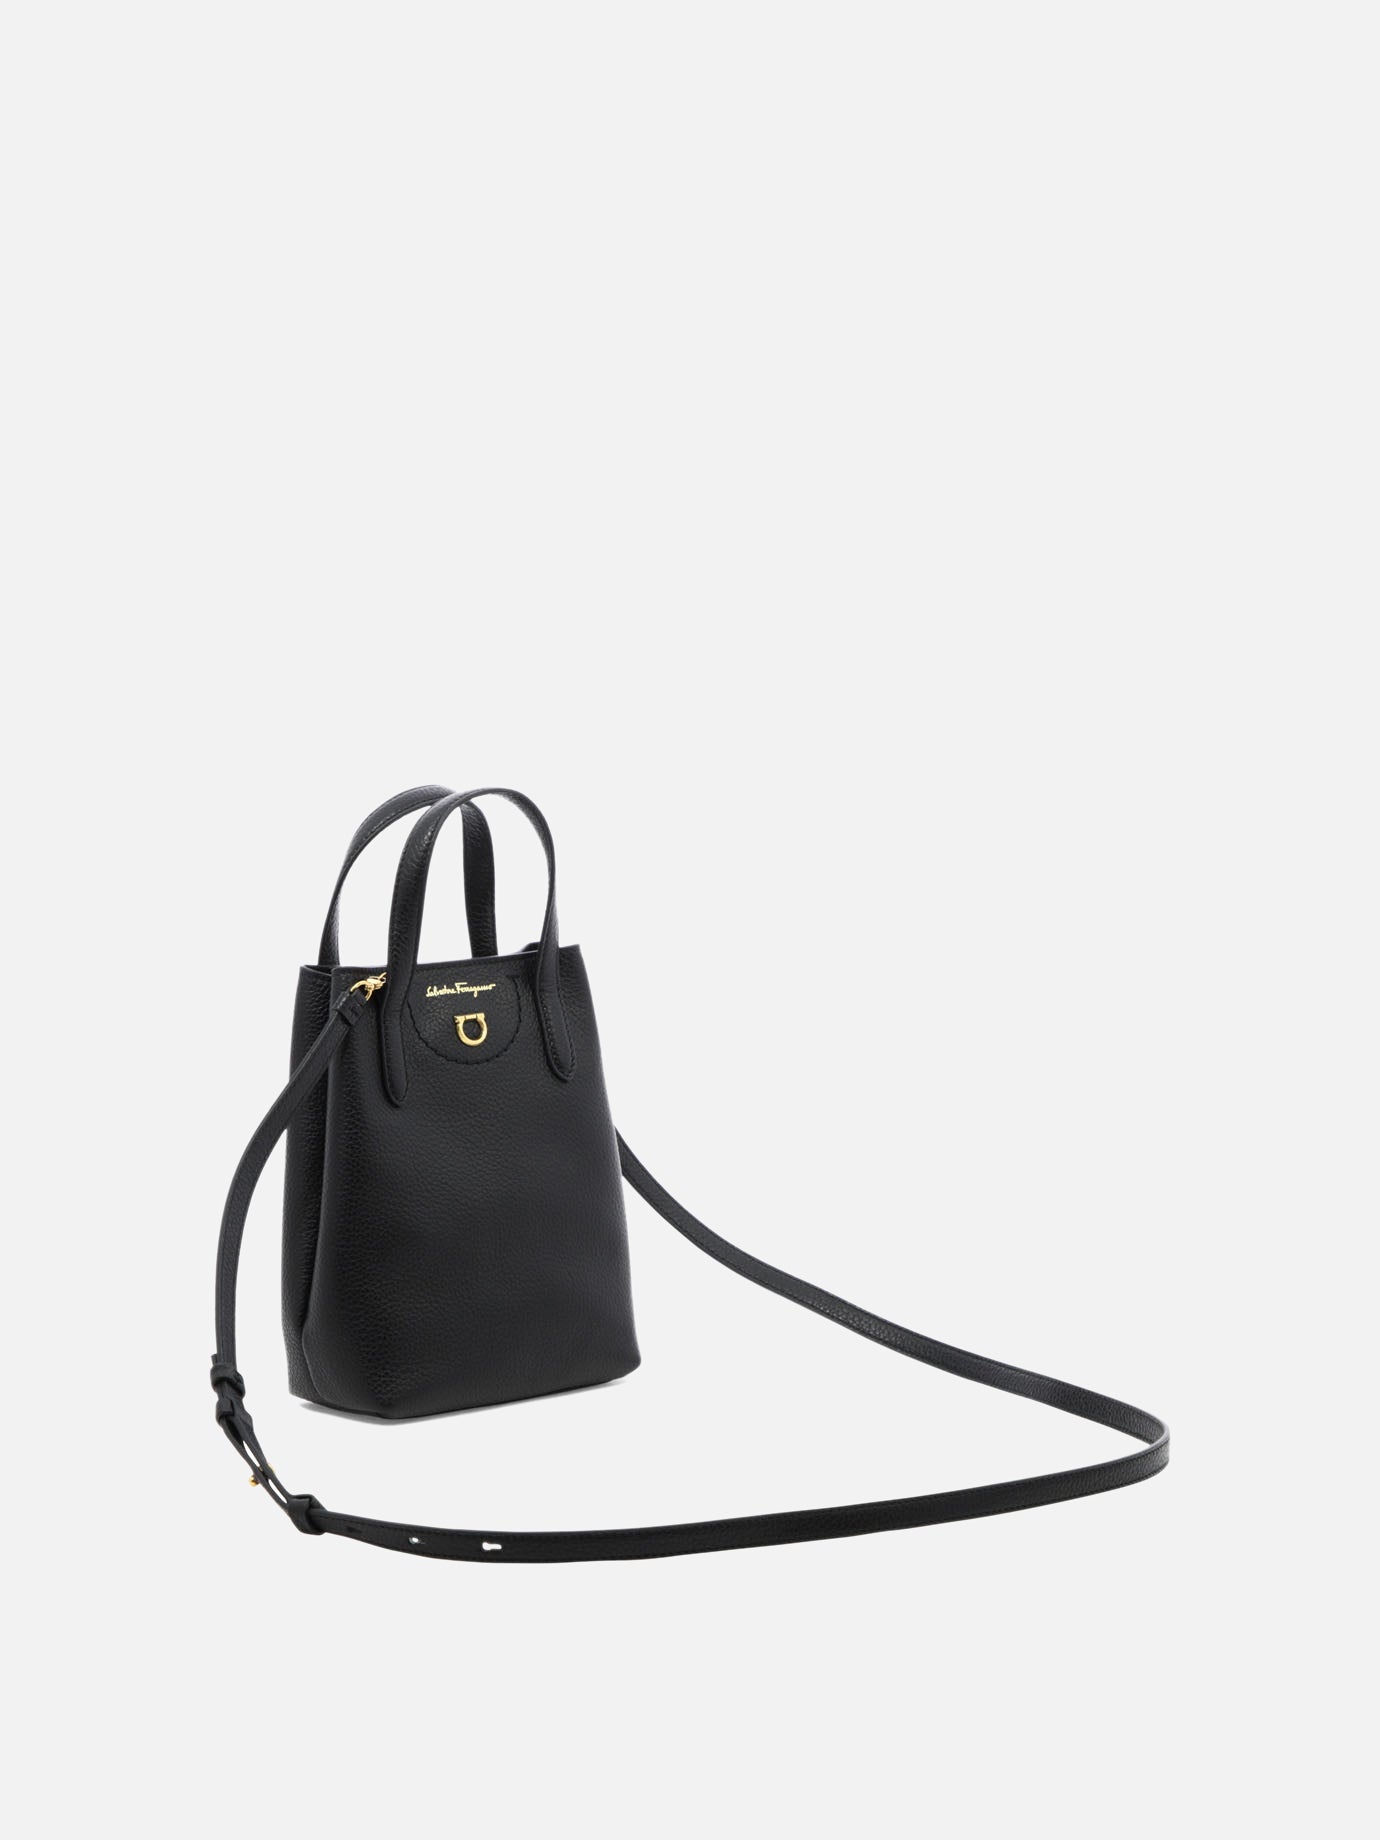 "Gancini Mini" handbag